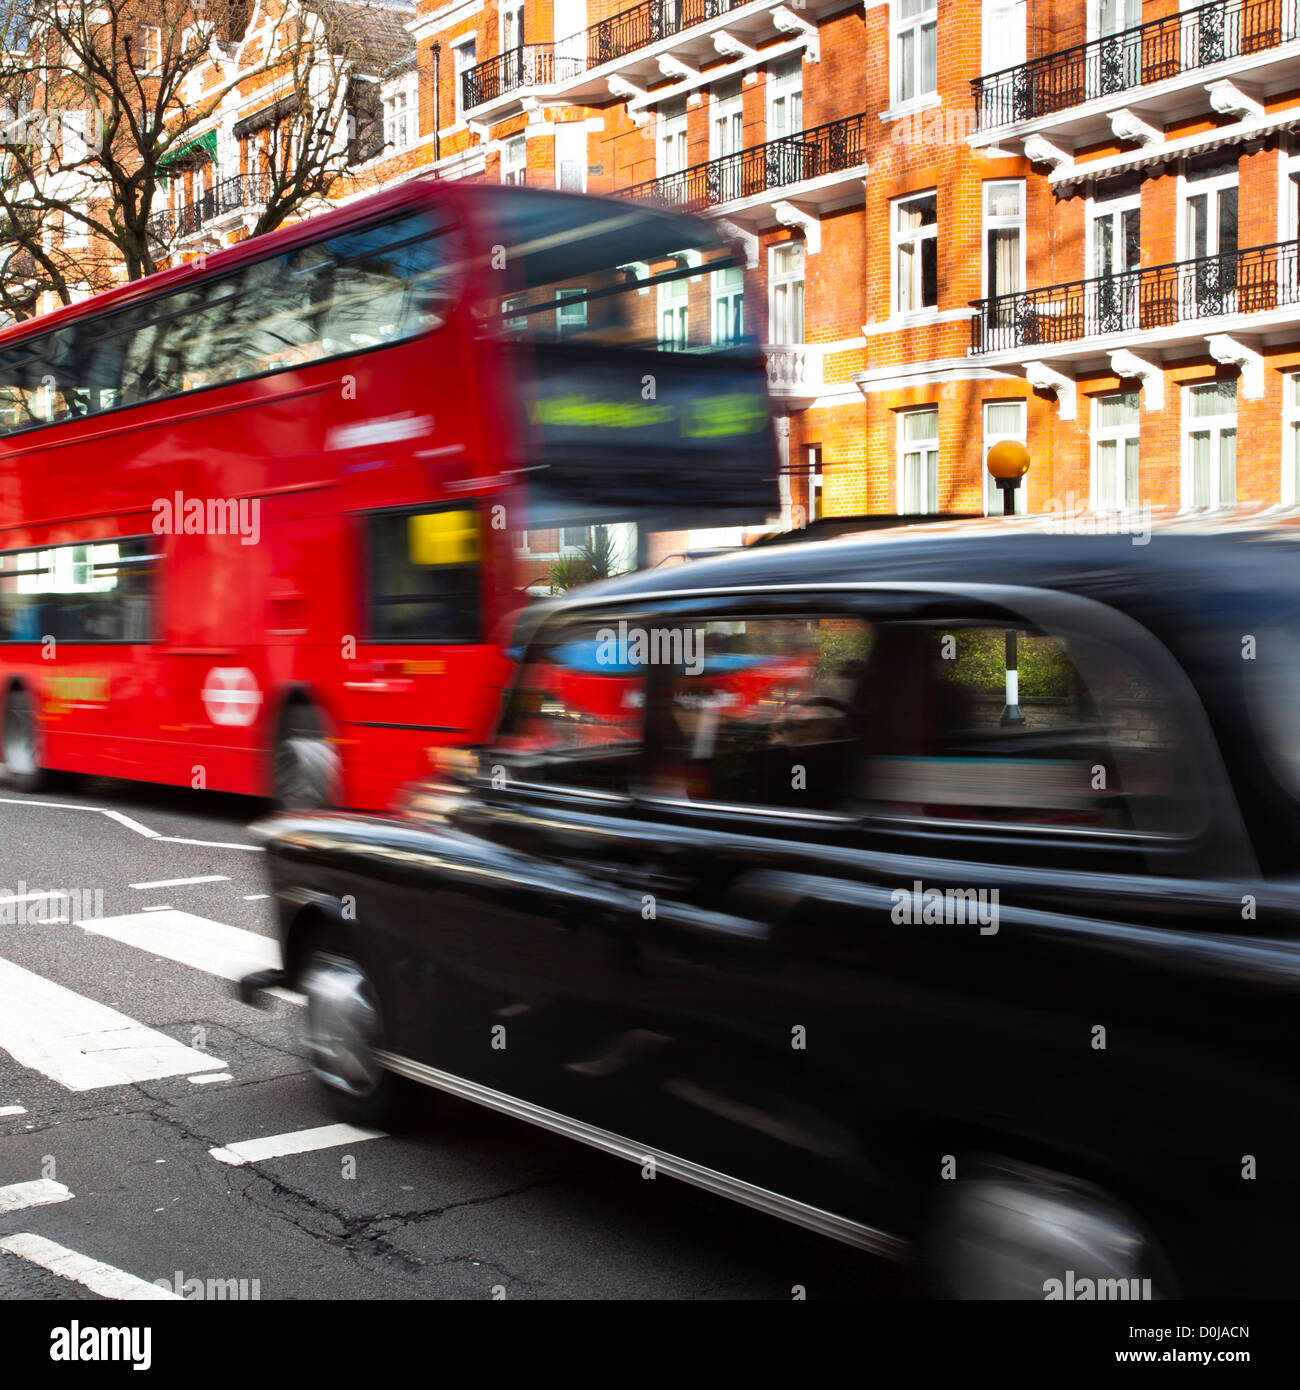 Un rouge et London Bus Taxi Taxi noir la fameuse approche passage pour piétons d'Abbey Road, rendue célèbre par le couvercle de l'un des Beatles Banque D'Images